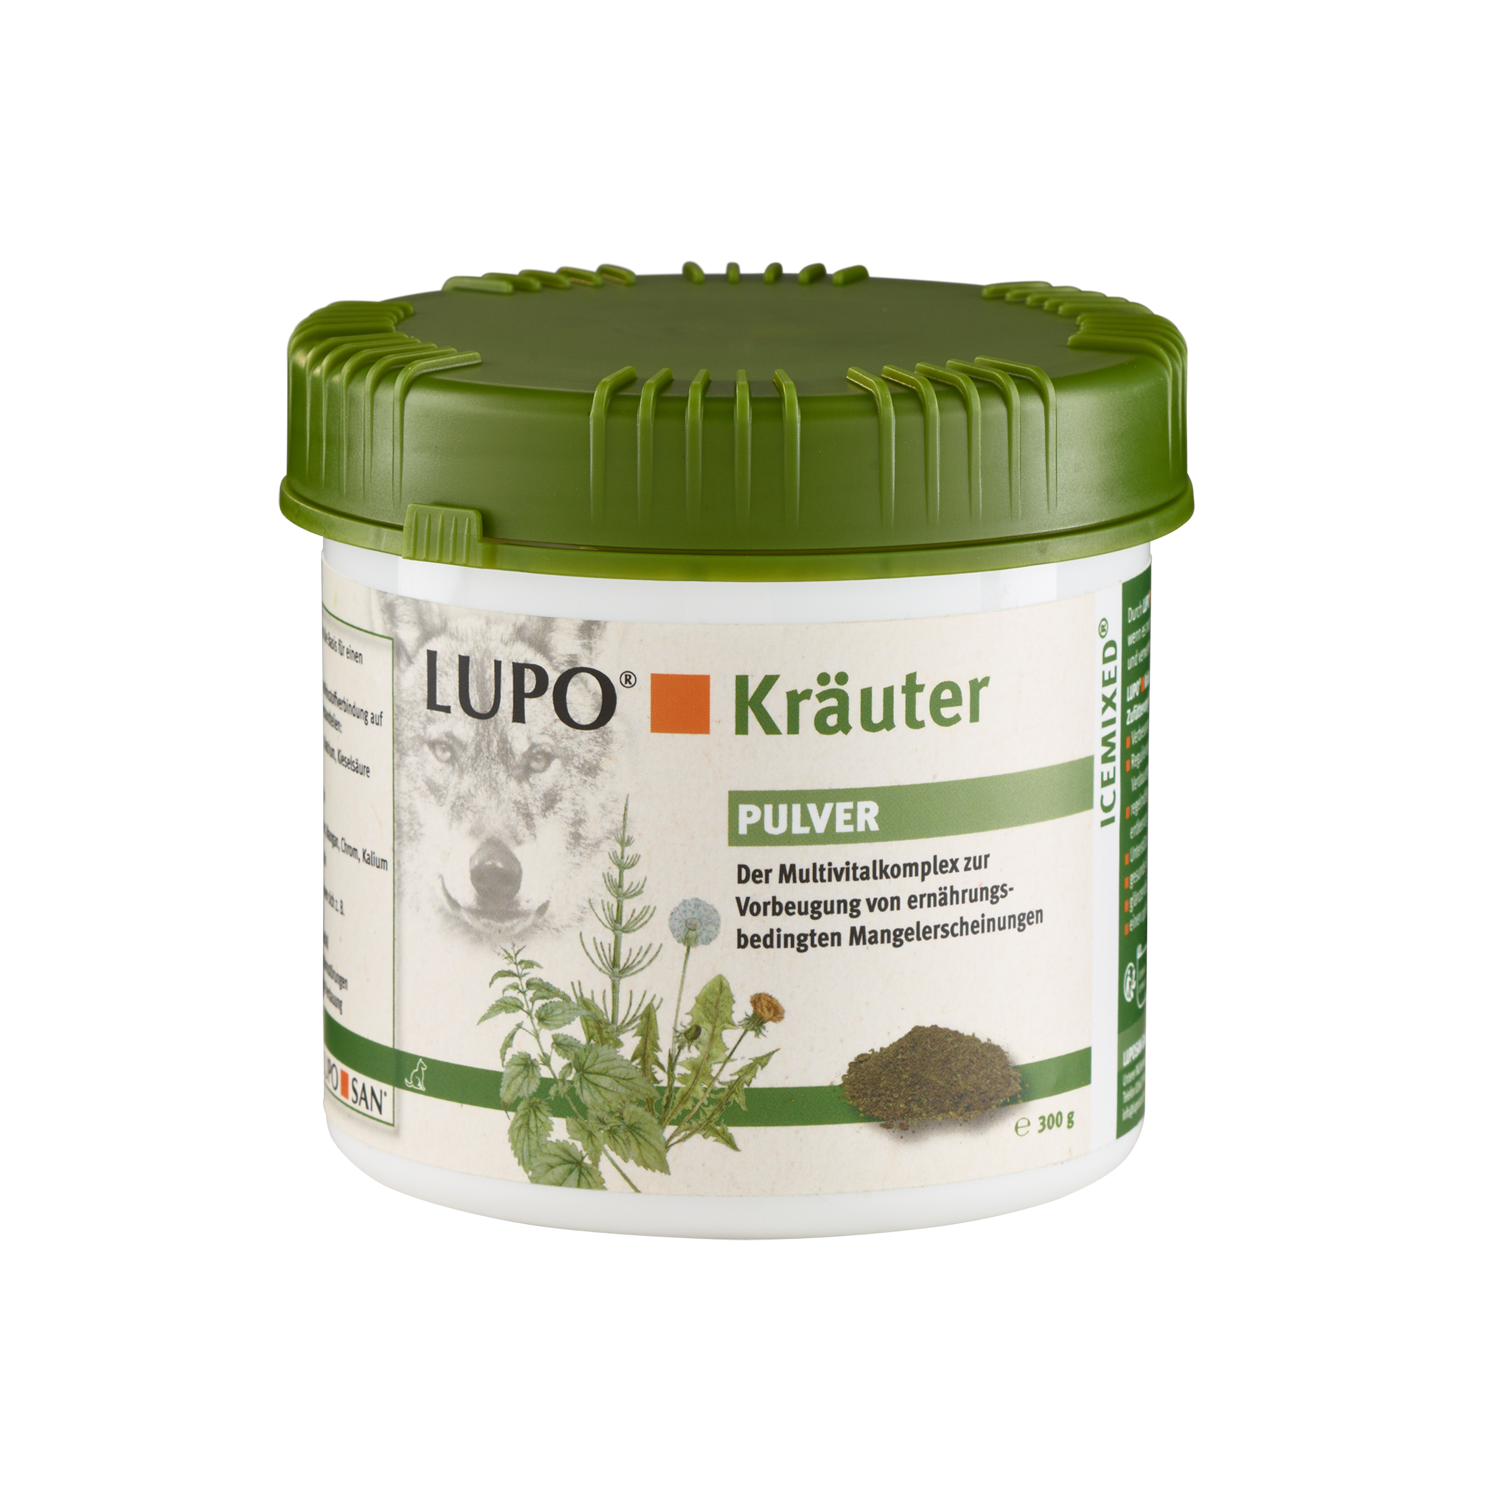 LUPO Kräuter Pulver 300 g